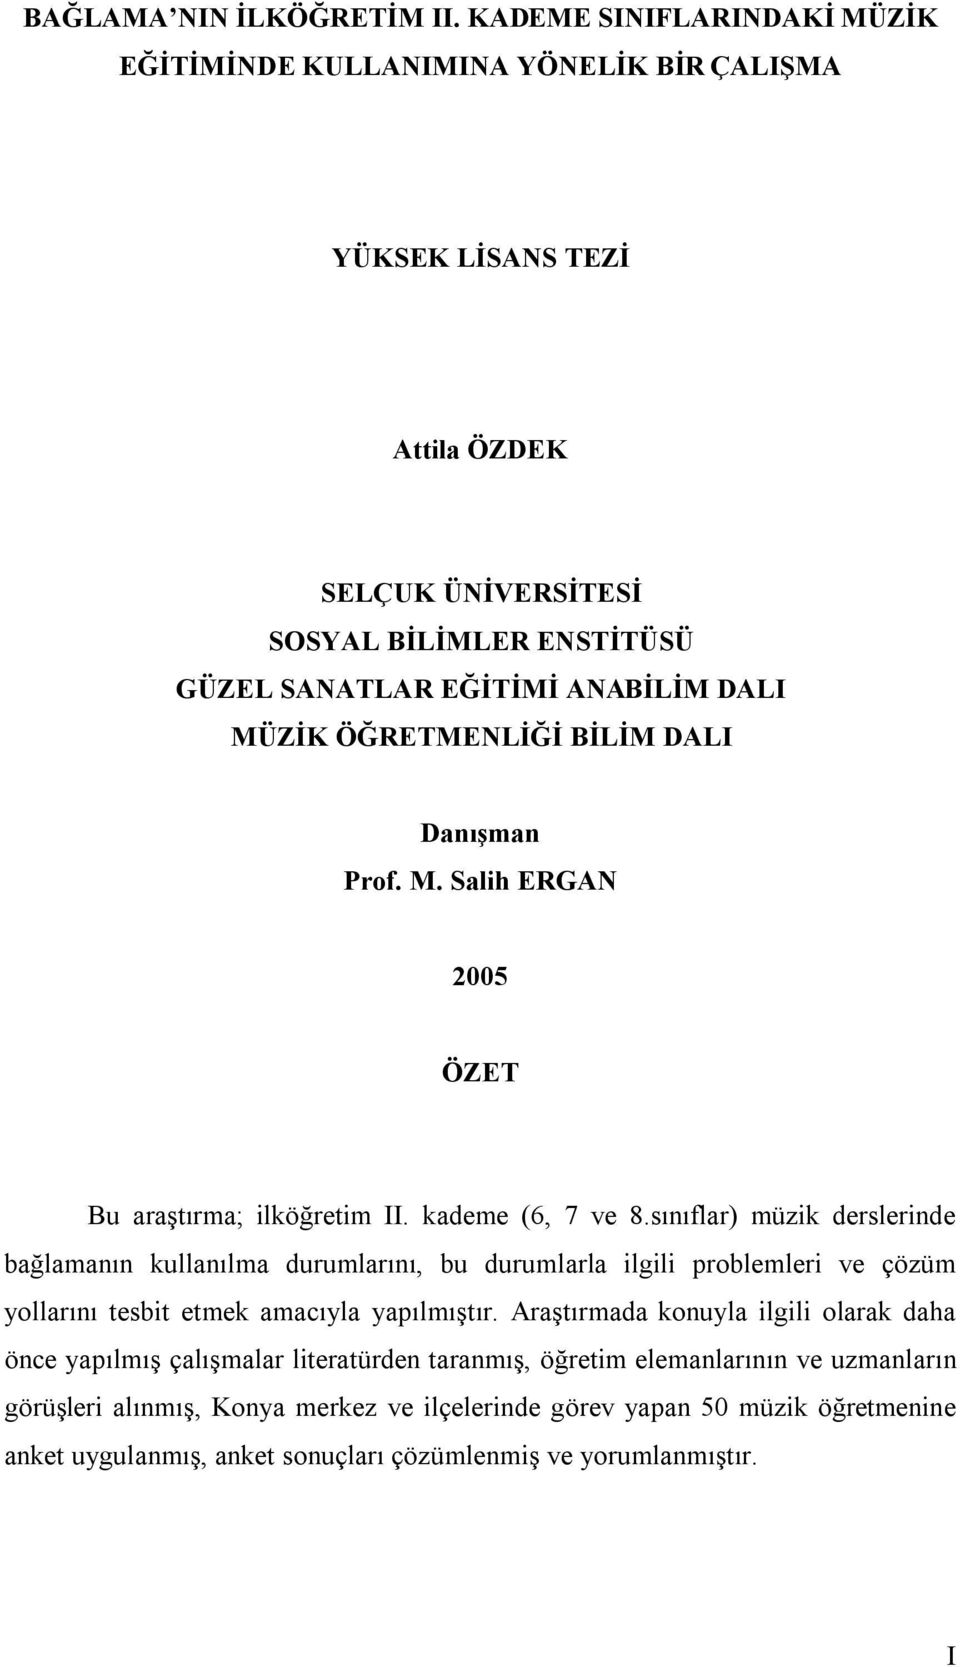 MÜZİK ÖĞRETMENLİĞİ BİLİM DALI Danışman Prof. M. Salih ERGAN 2005 ÖZET Bu araştırma; ilköğretim II. kademe (6, 7 ve 8.